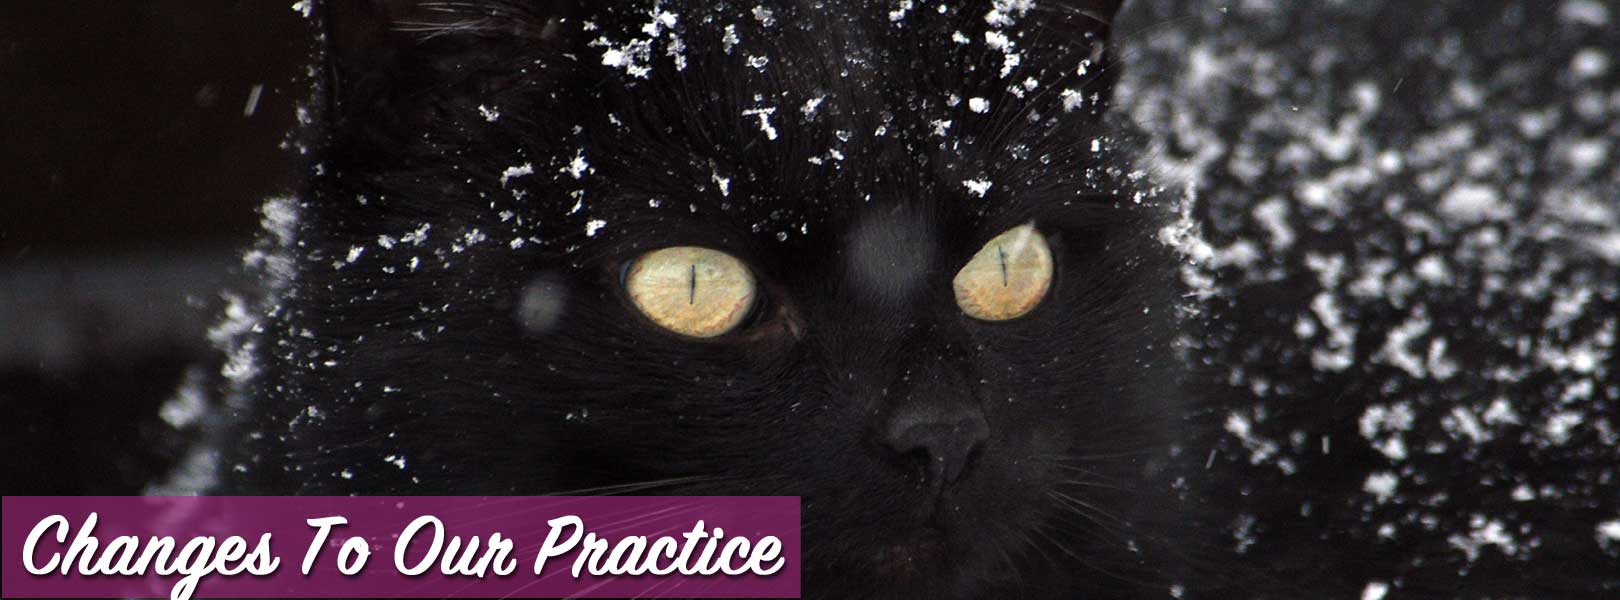 Black Cat Snow